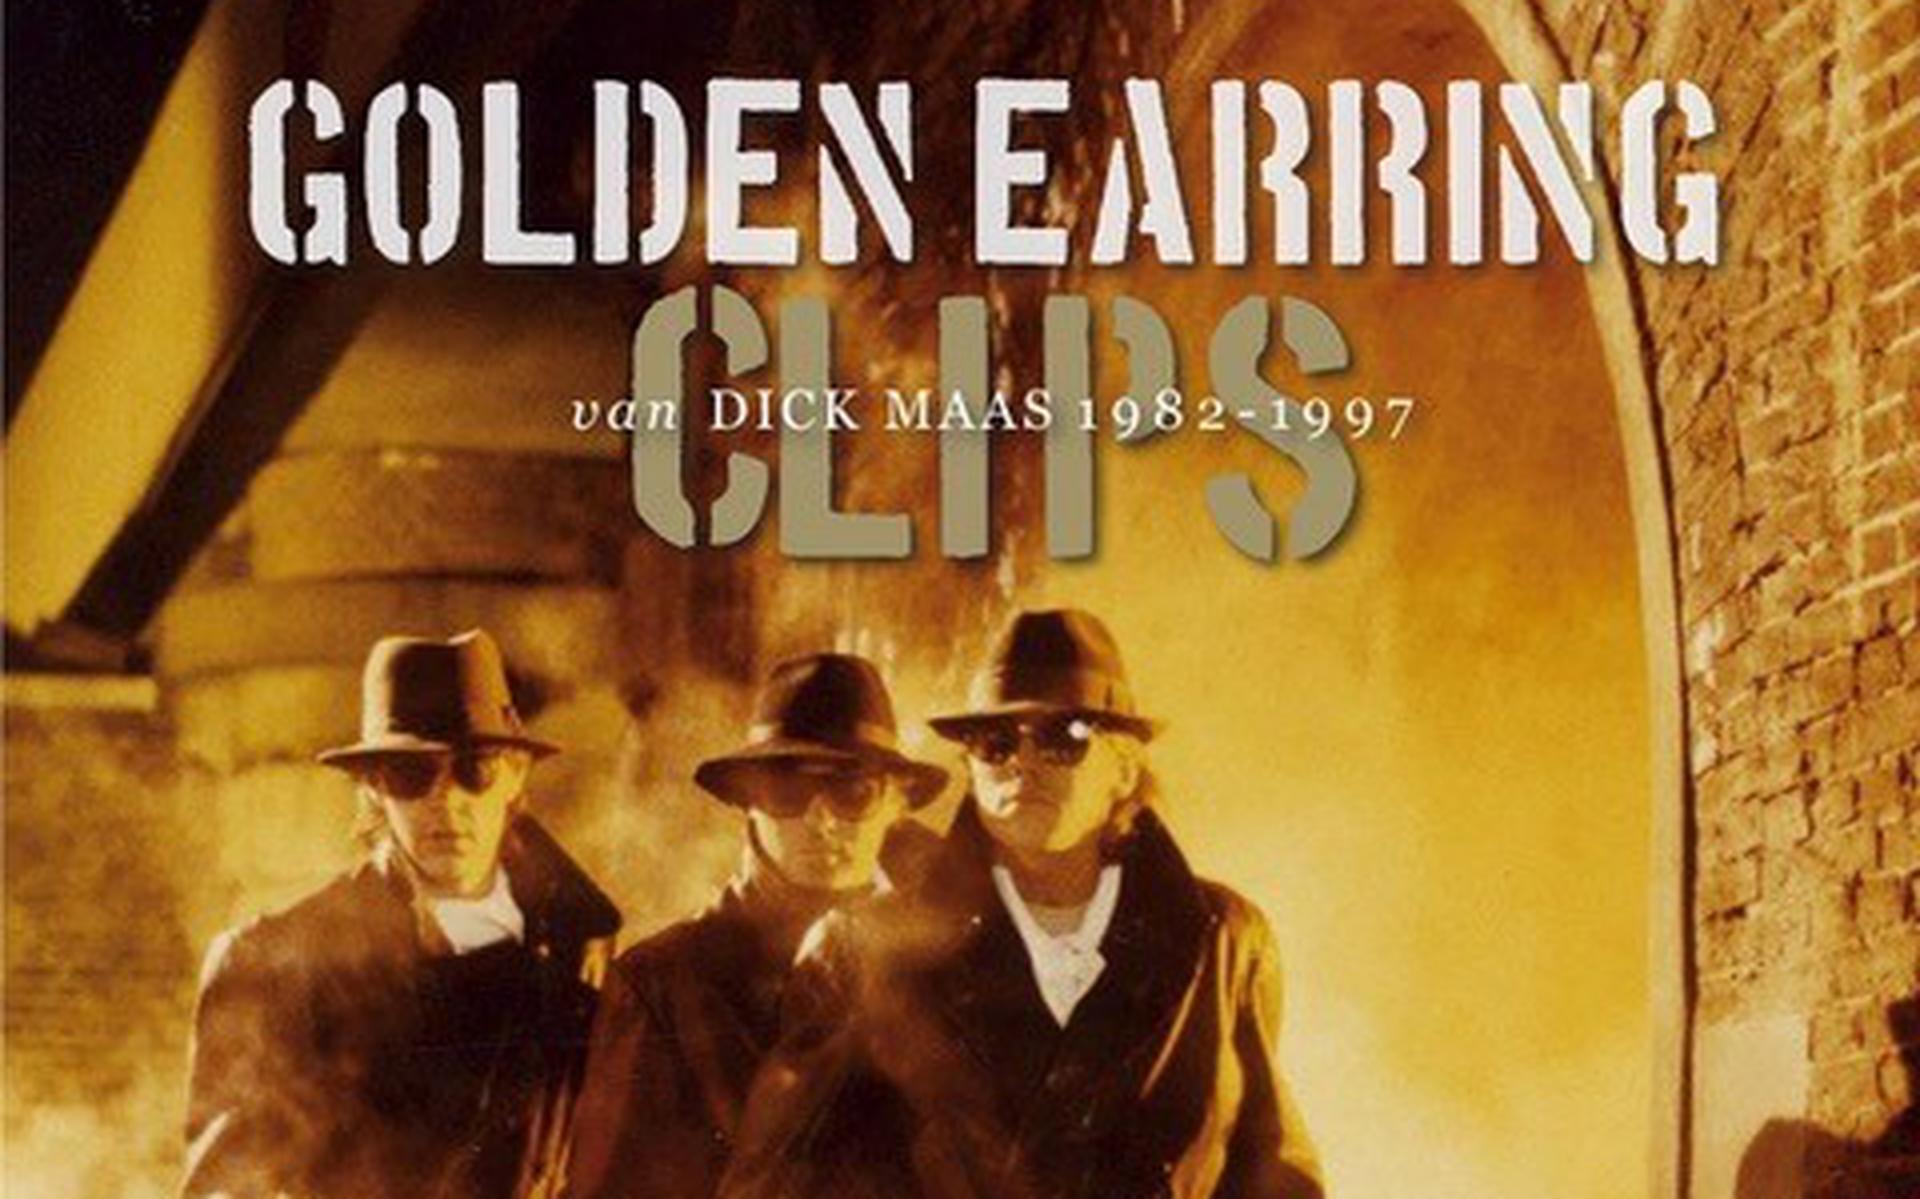 Golden Earring Clips van Dick Maas 1982-1997.